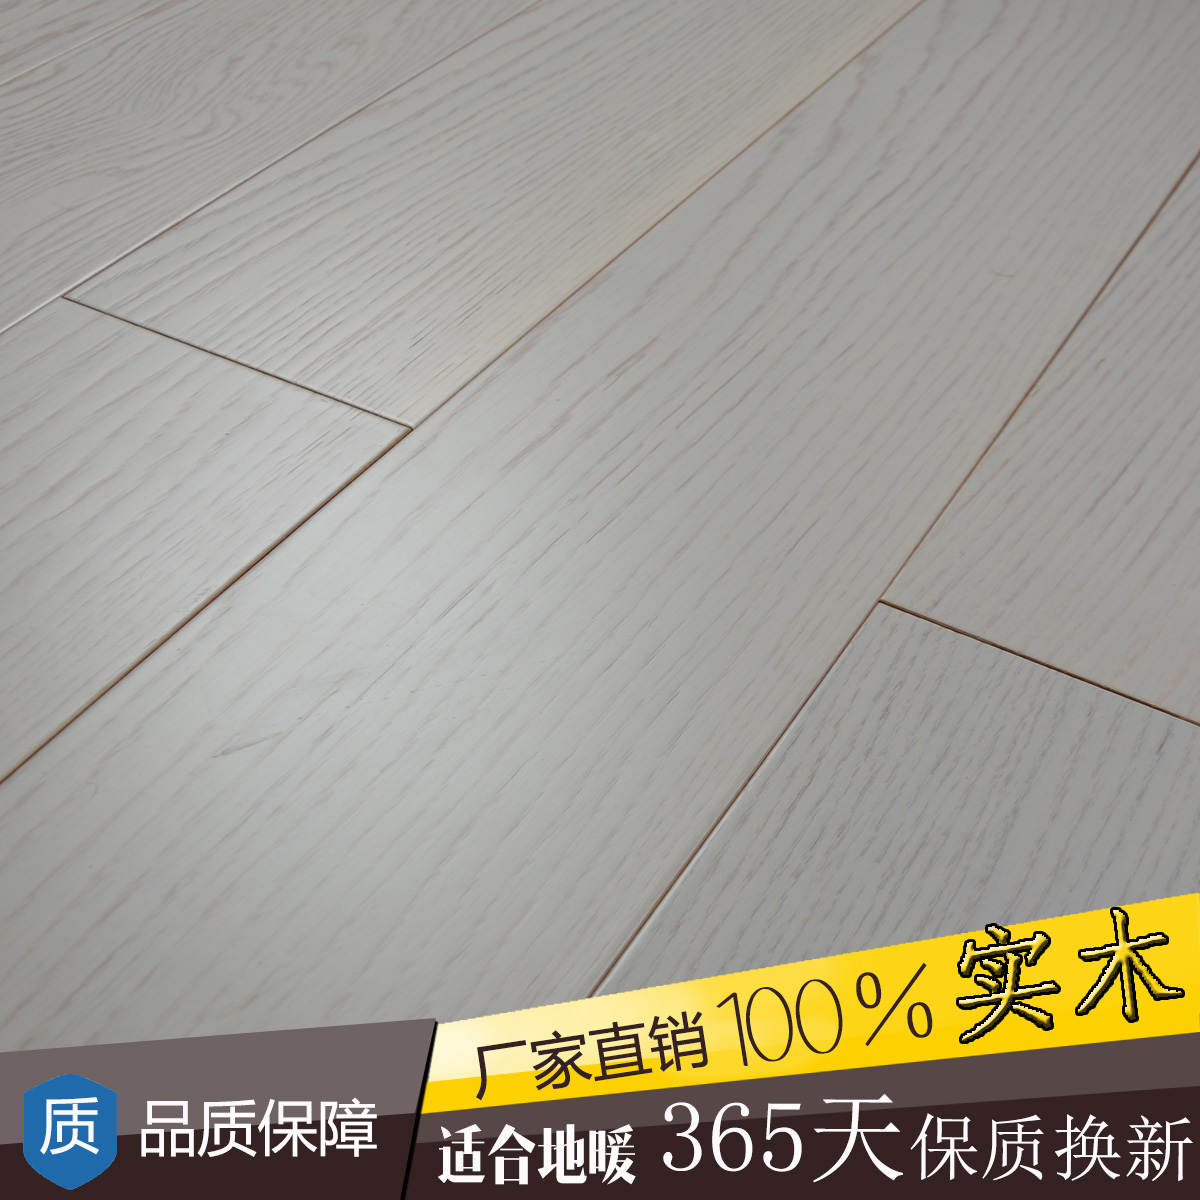 橡木欧式多层实木复合地板耐磨大自然环保15mm白色木地板圣象同质